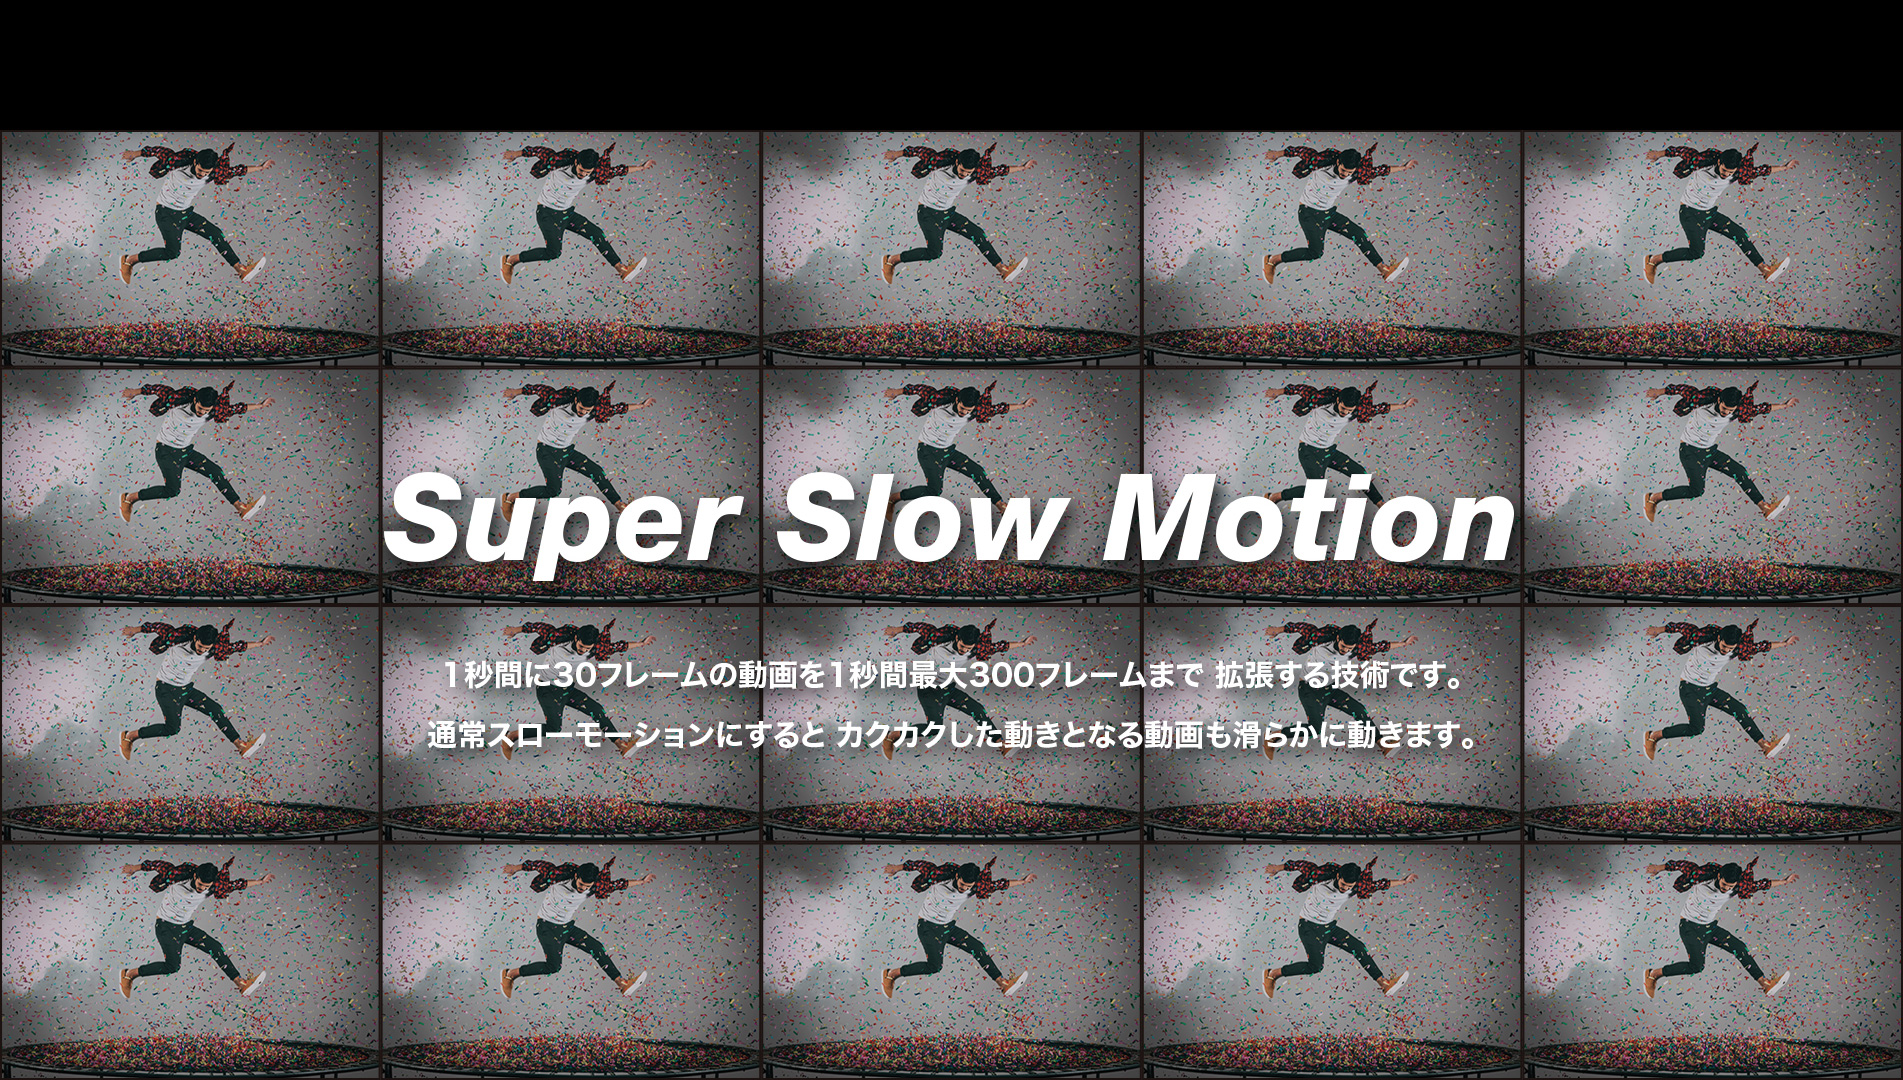 Super Slow Motion